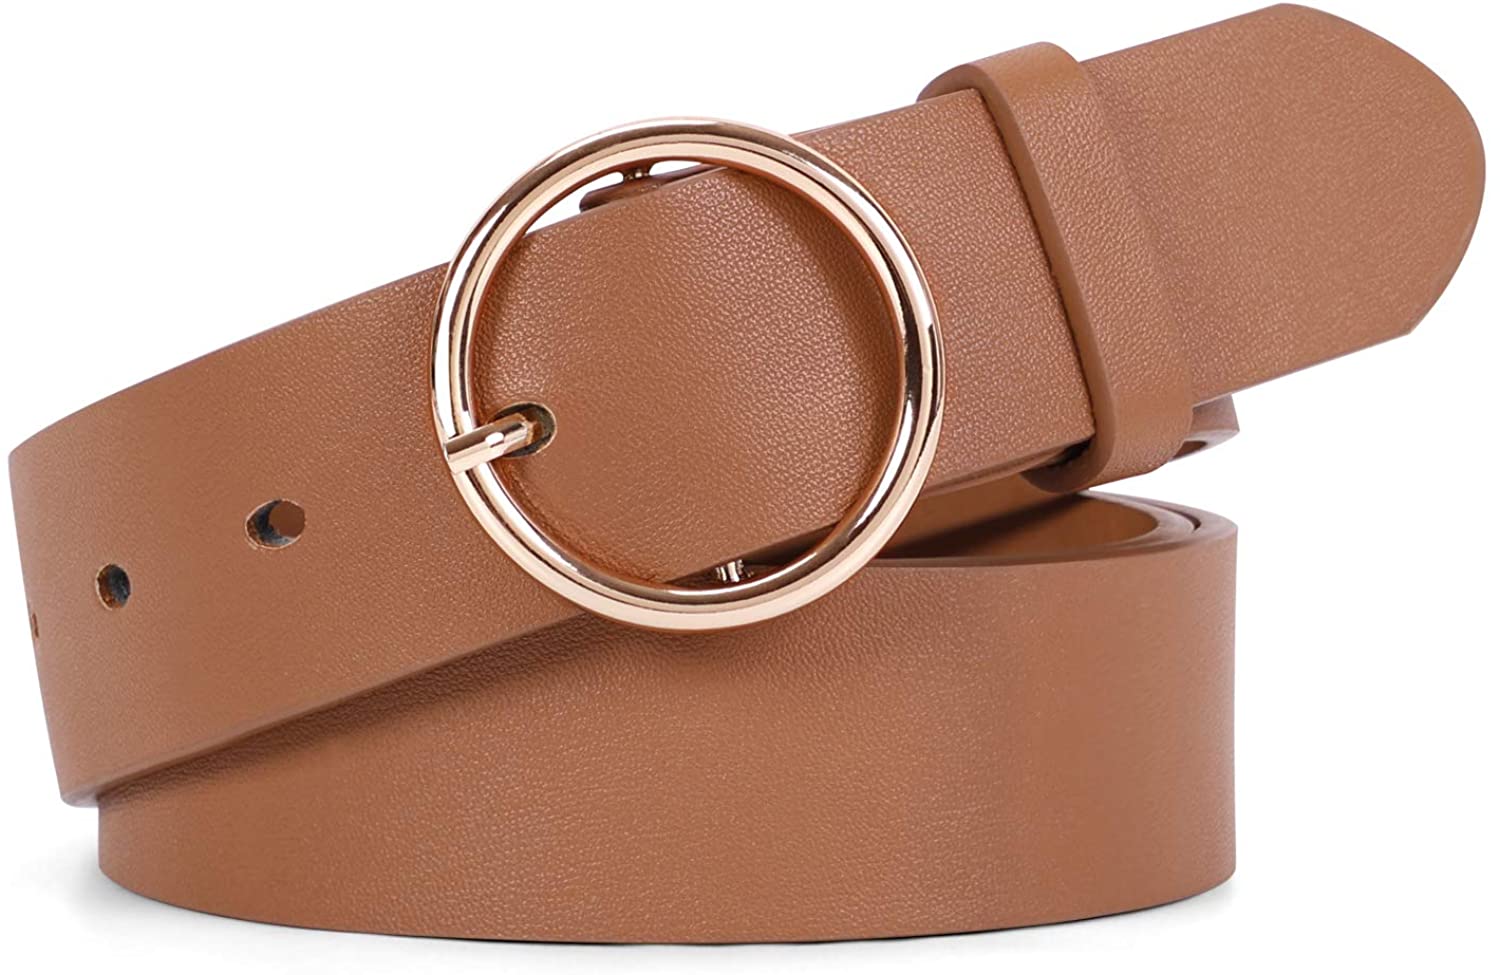 Buy WERFORU Women Casual Dress Belt Genuine Leather Belt